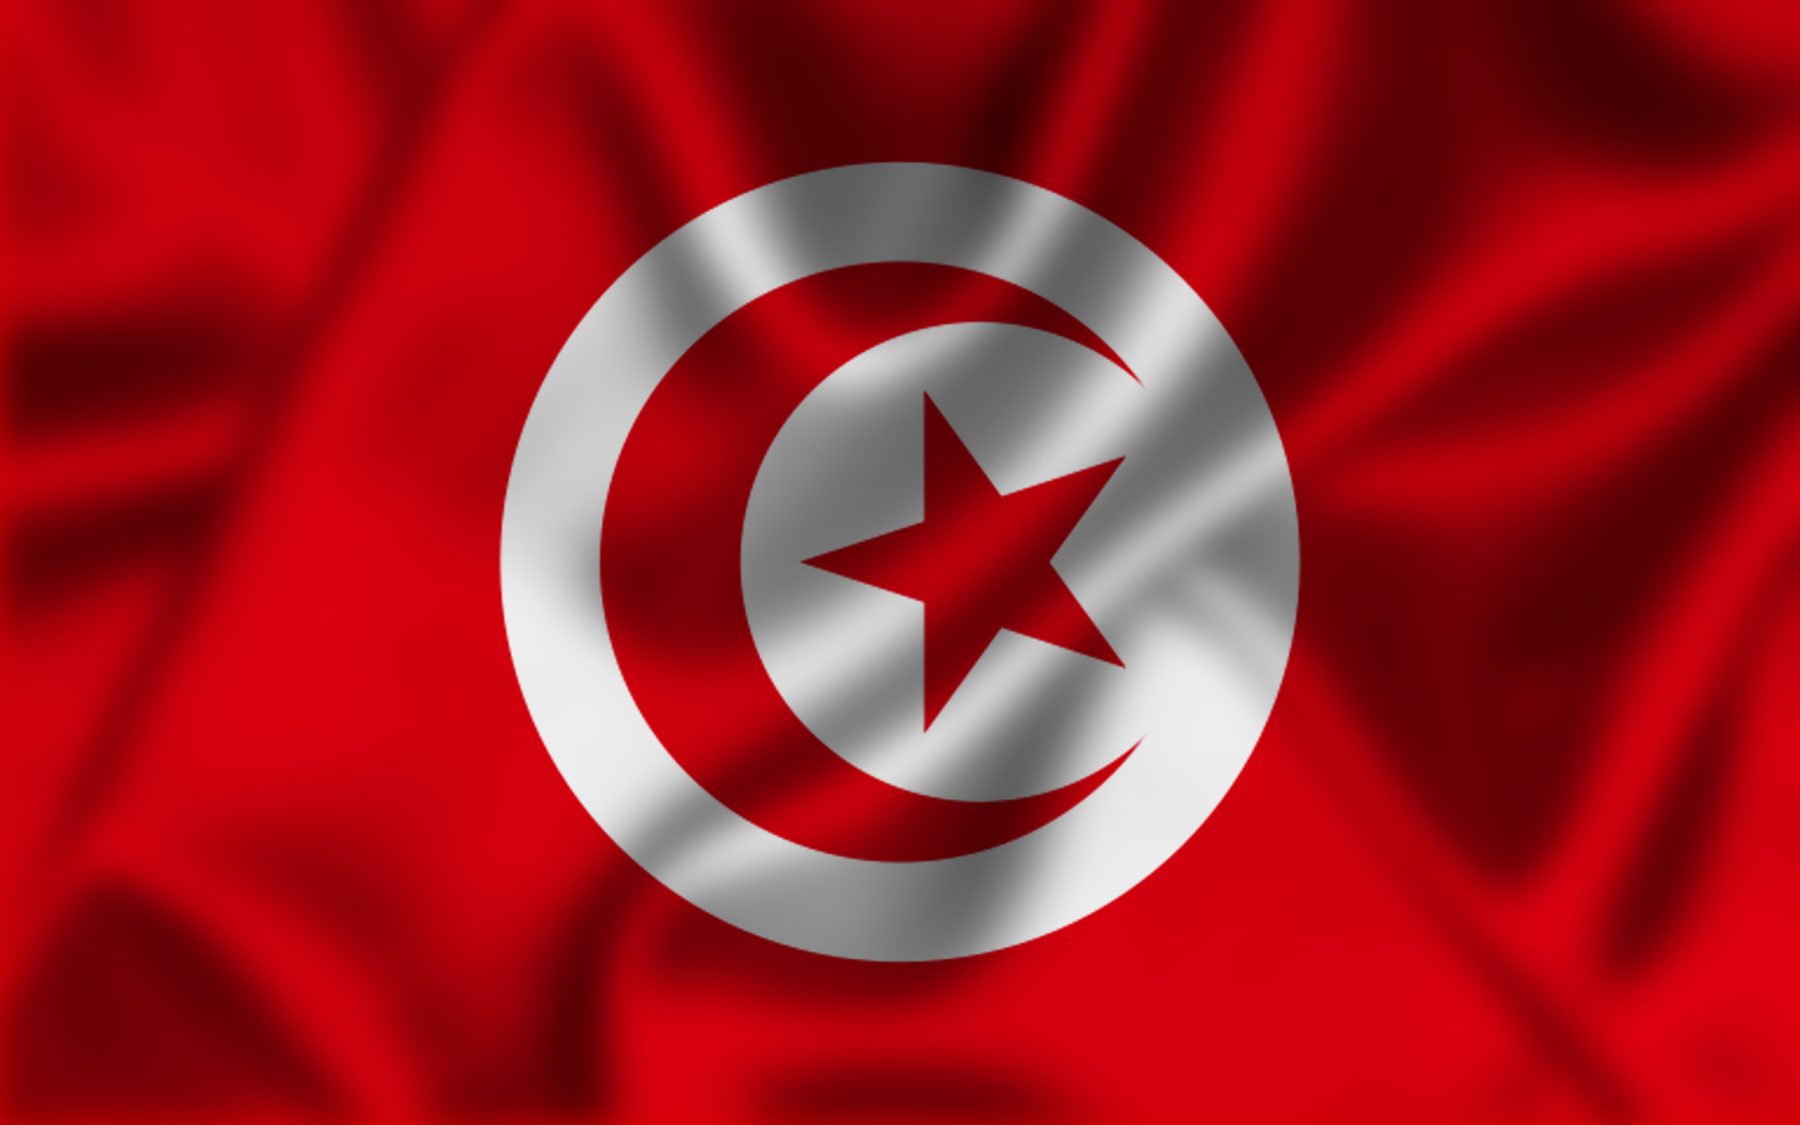 رئيس المجلس الأعلى للقضاء في تونس أكد أن سعيّد لا يملك آلية قانونية لحل المجلس